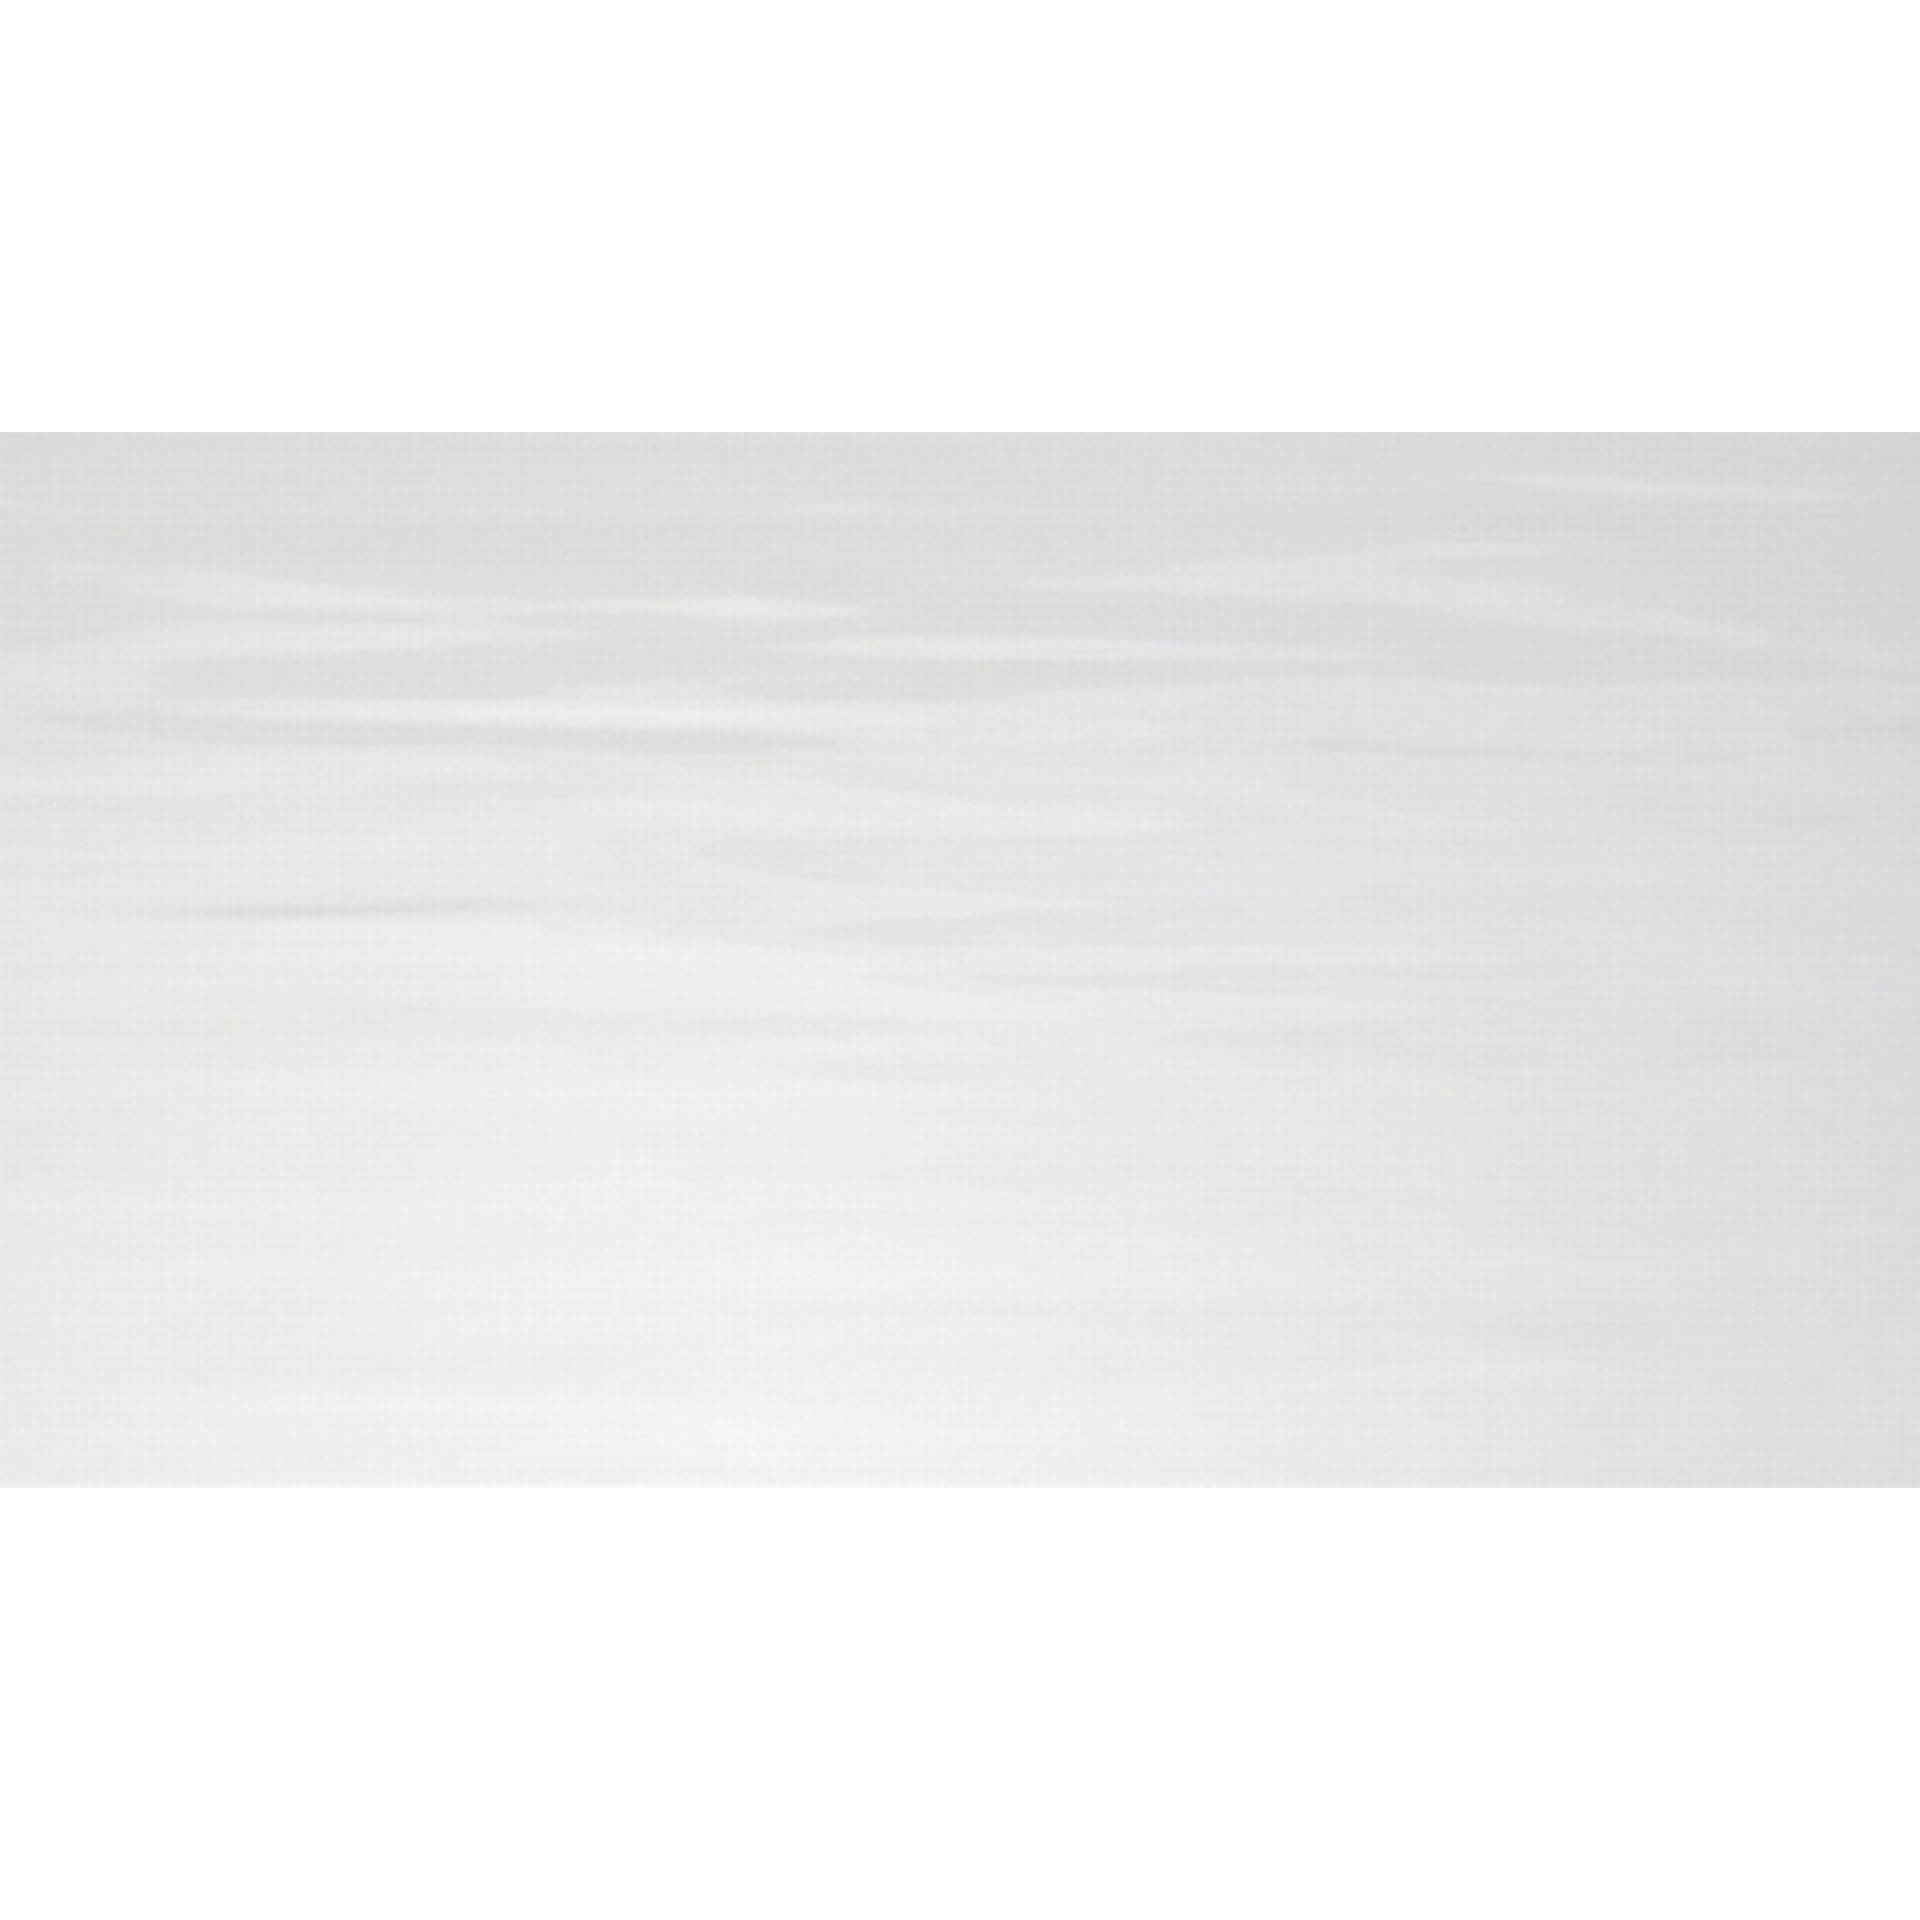 Wandfliese 'Bianca' Steingut weiß glänzend 30 x 60 cm